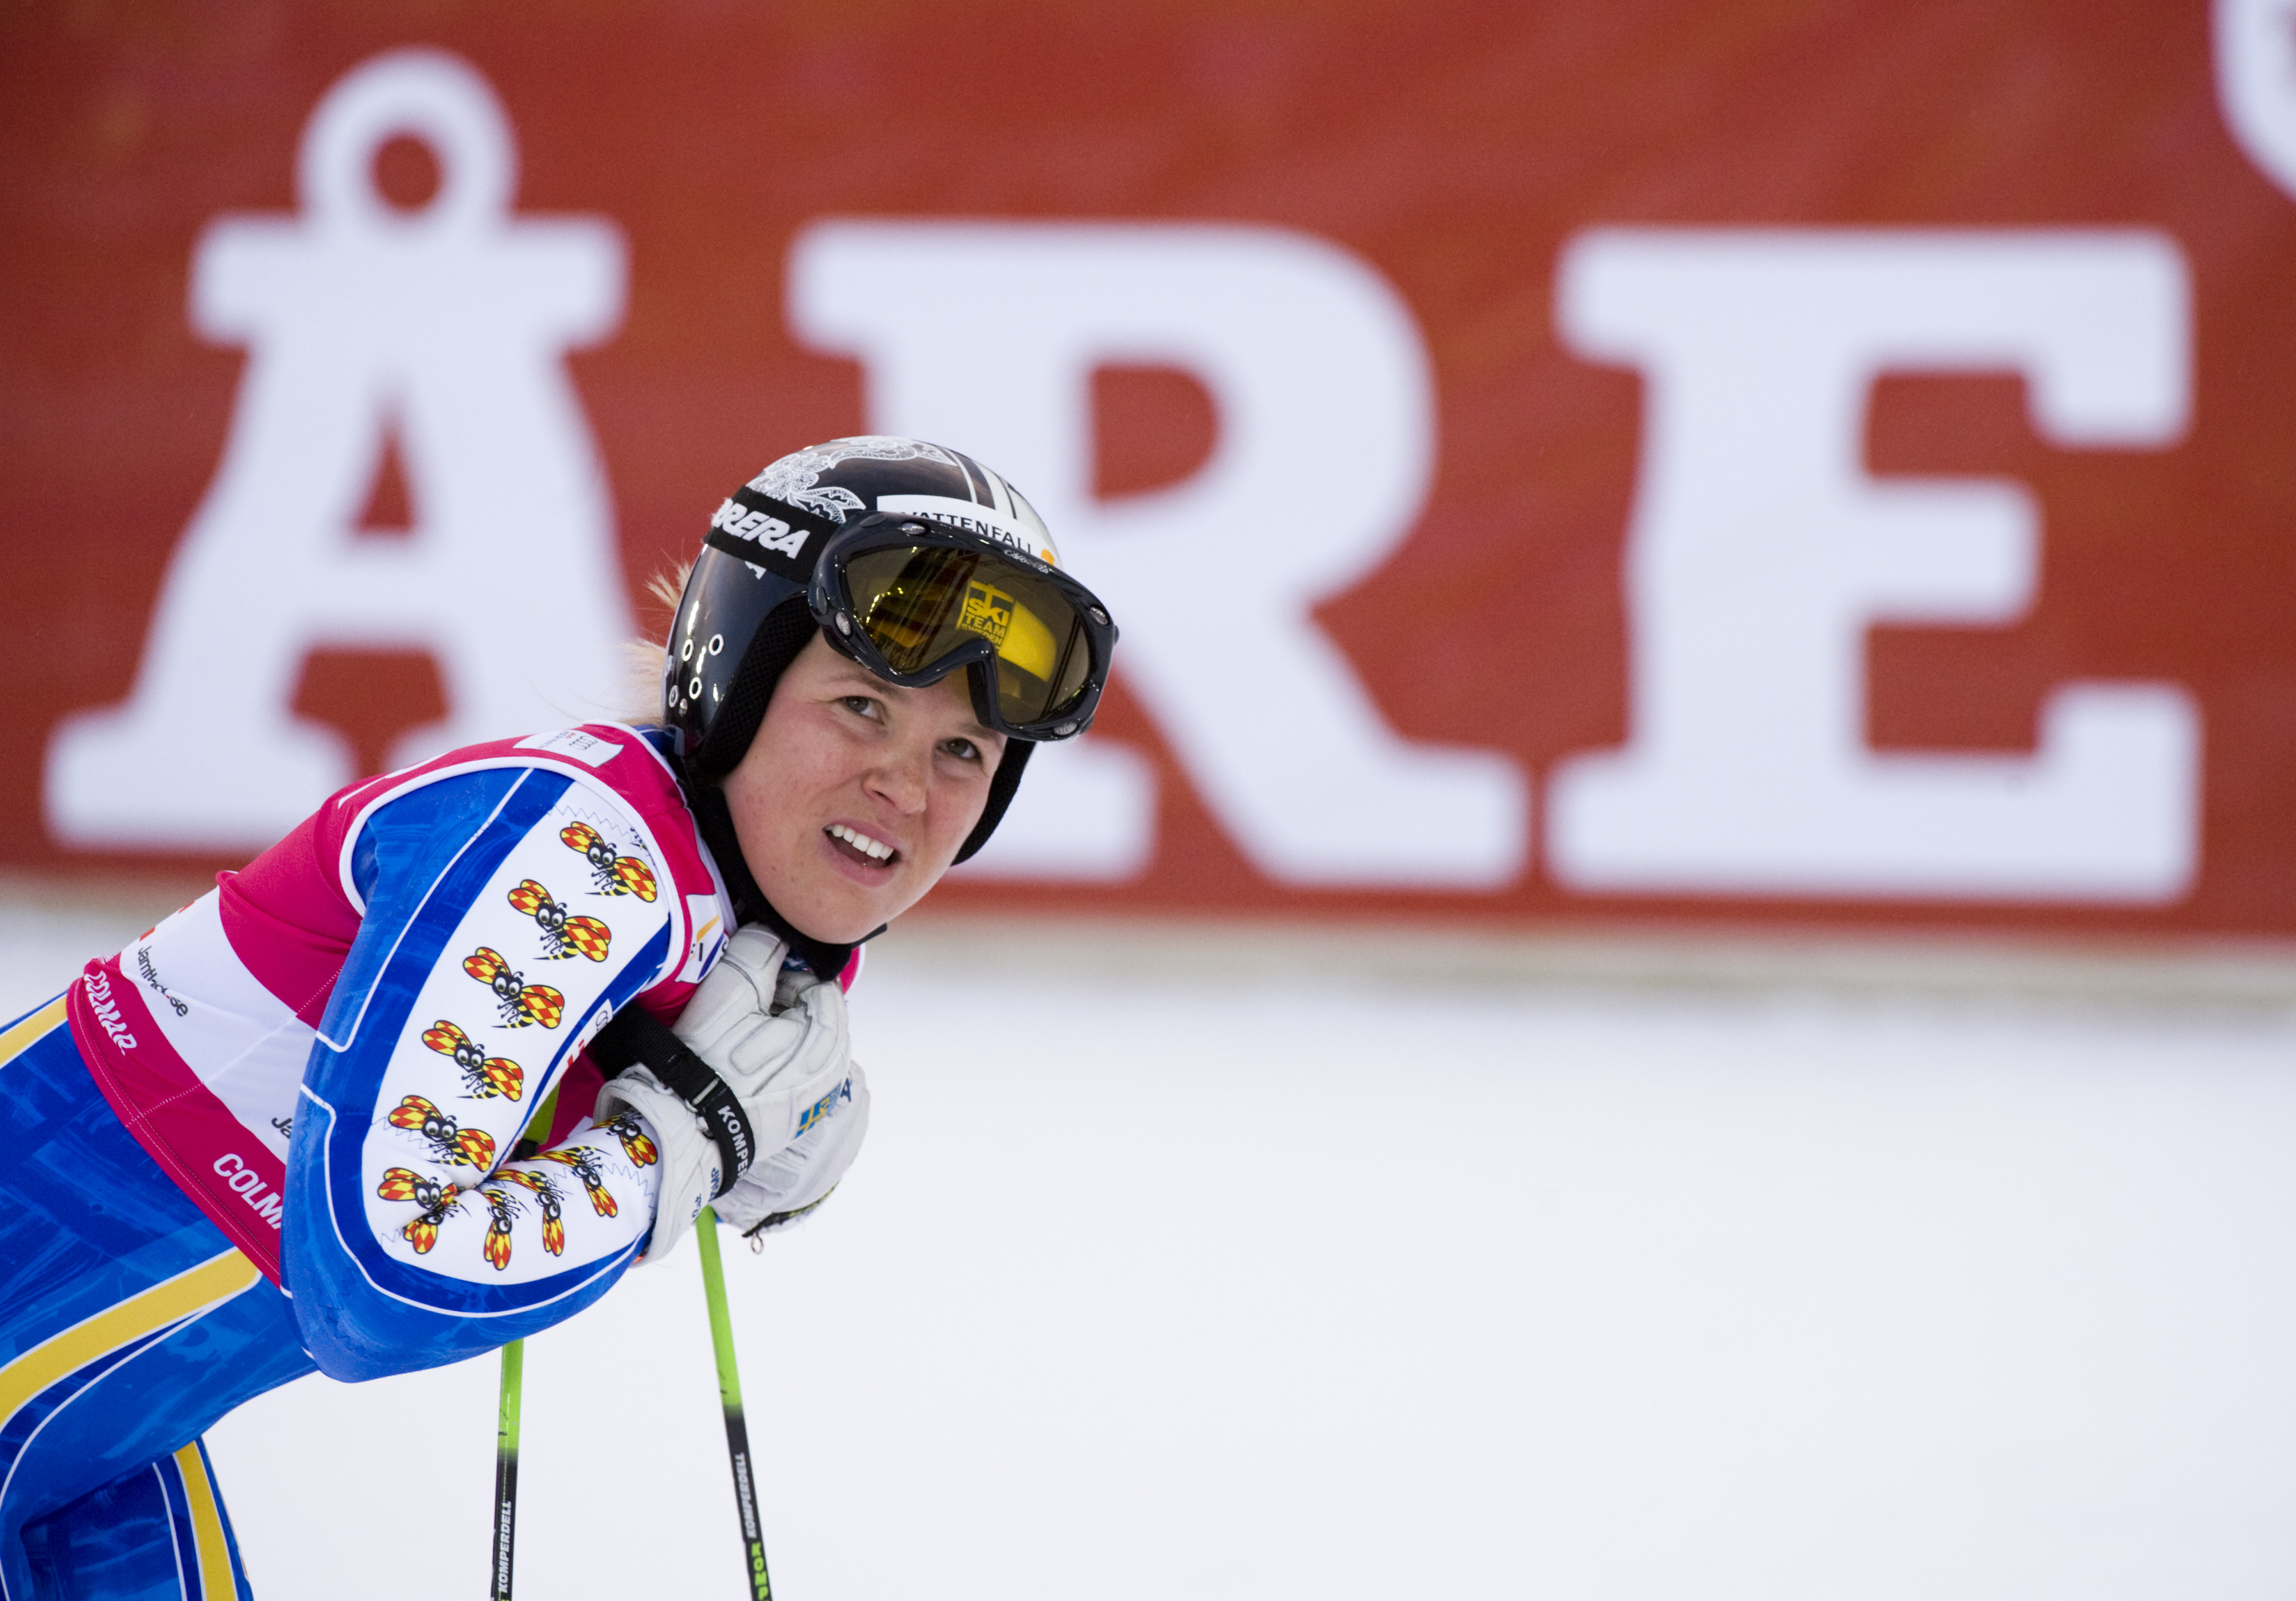 Anja Pärson misslyckades med att följa upp sina fina lopp i storslalom när hon i dag ställde upp i slalomtävlingarna i Maribor. 